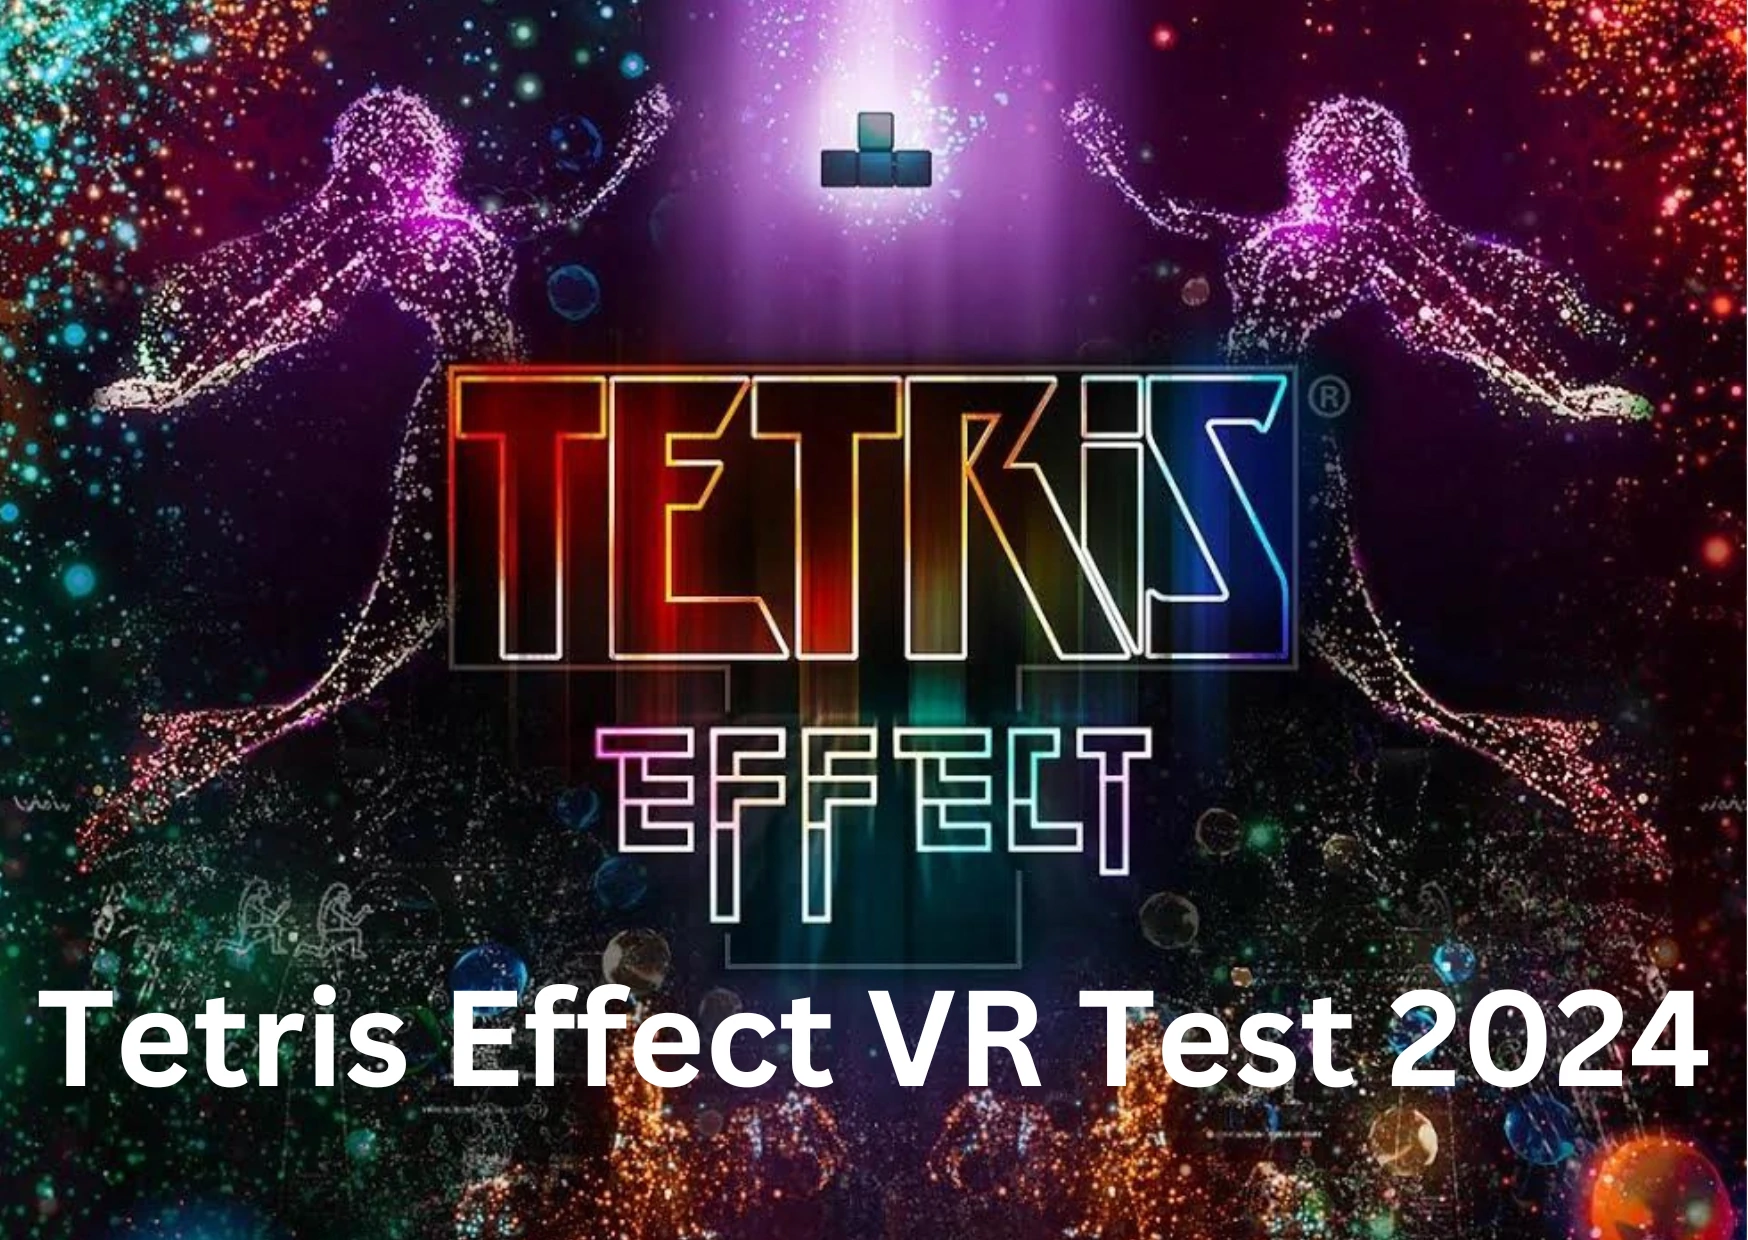 Tetris Effect VR Test 2024 eine geniale immersive Reise durch die Geschichte